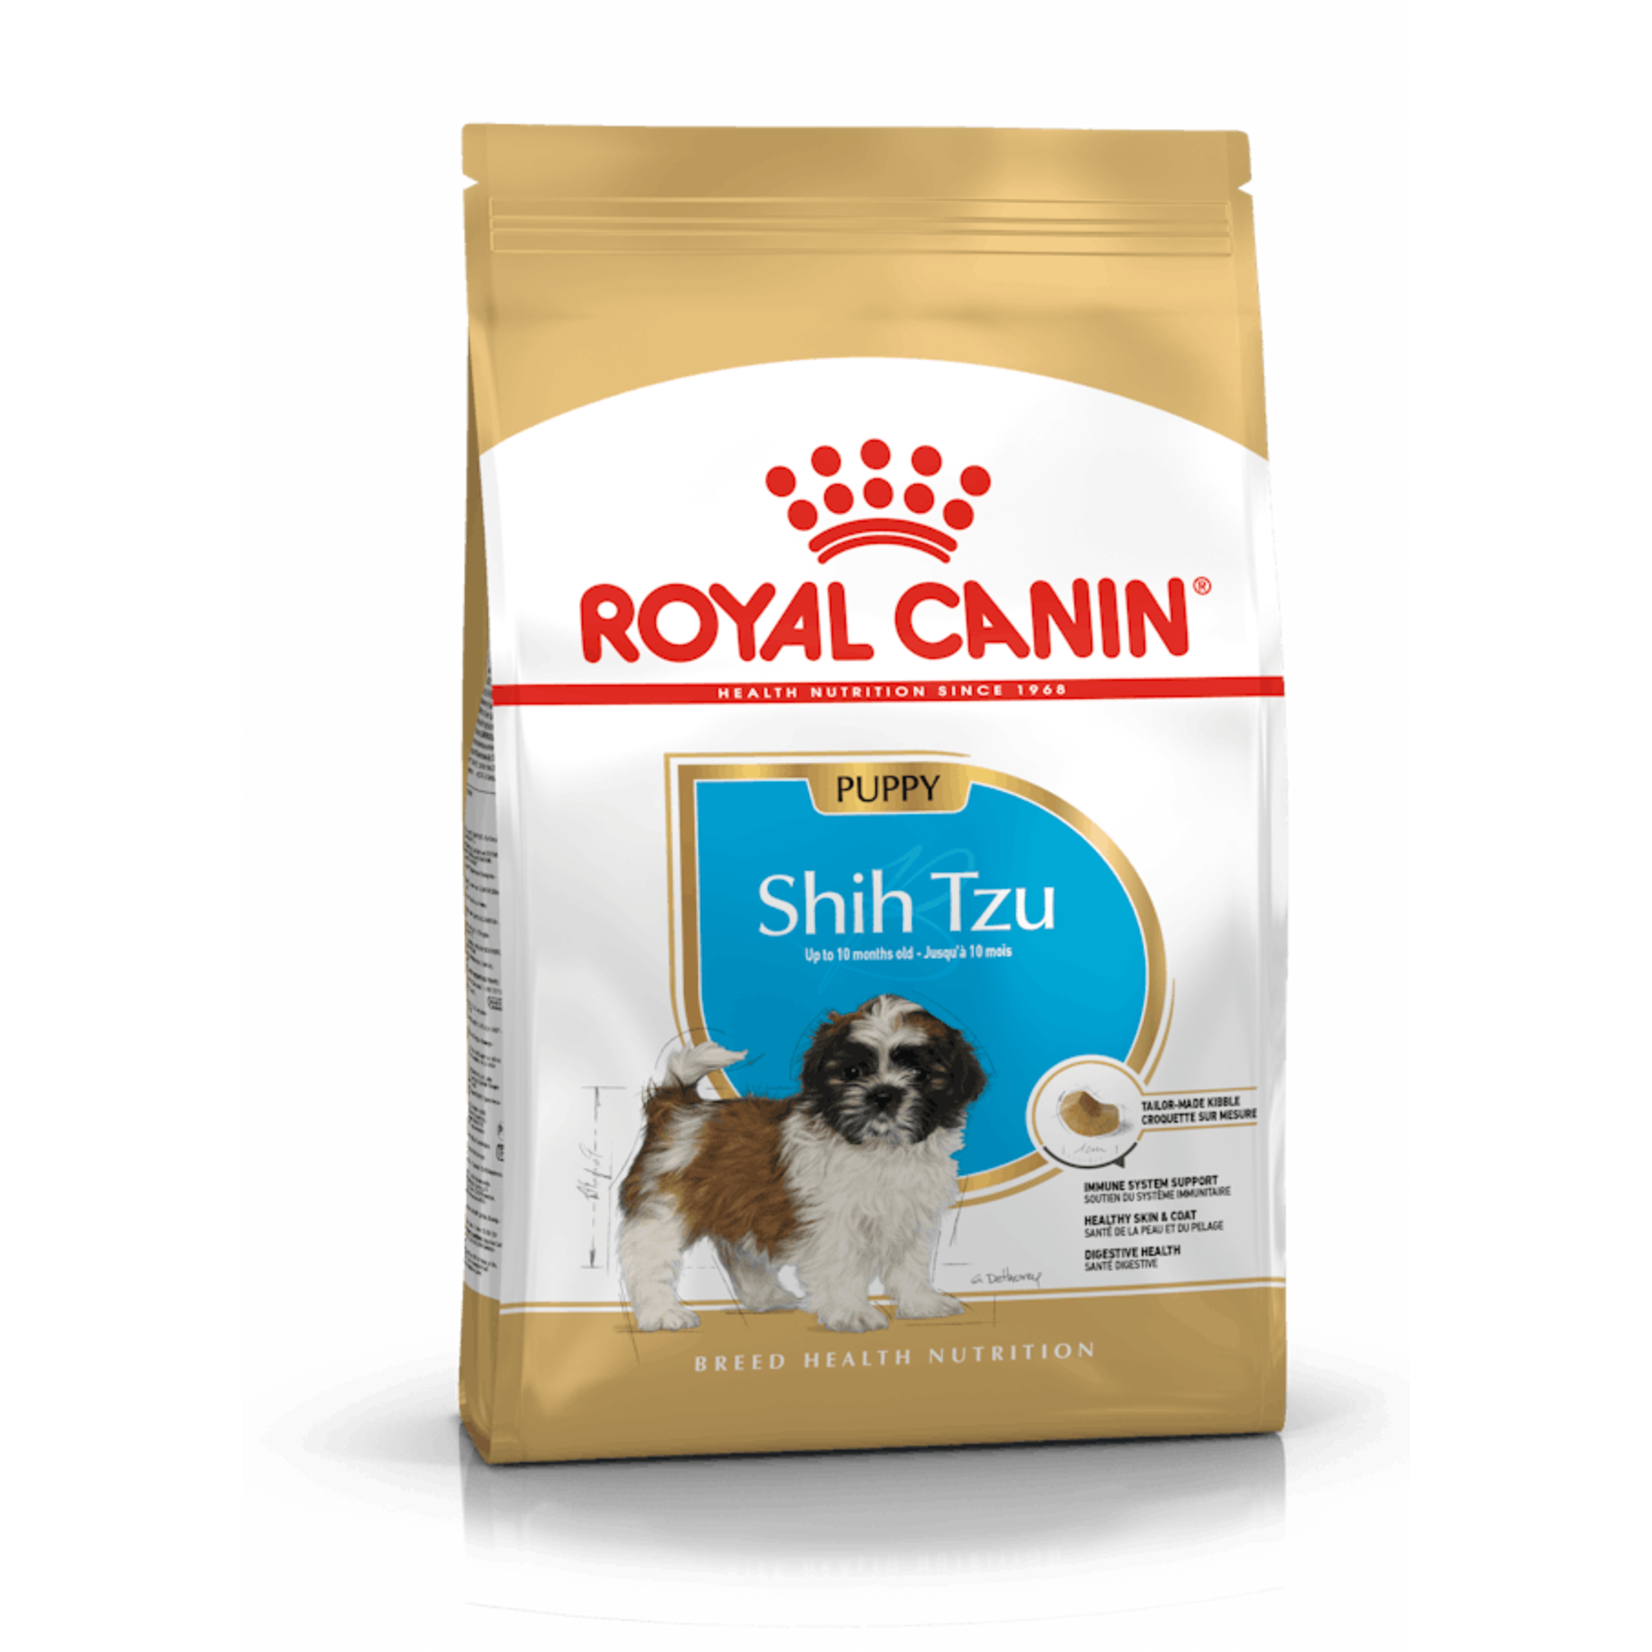 Royal Canin Shih Tzu Puppy Dog Food 1.5kg